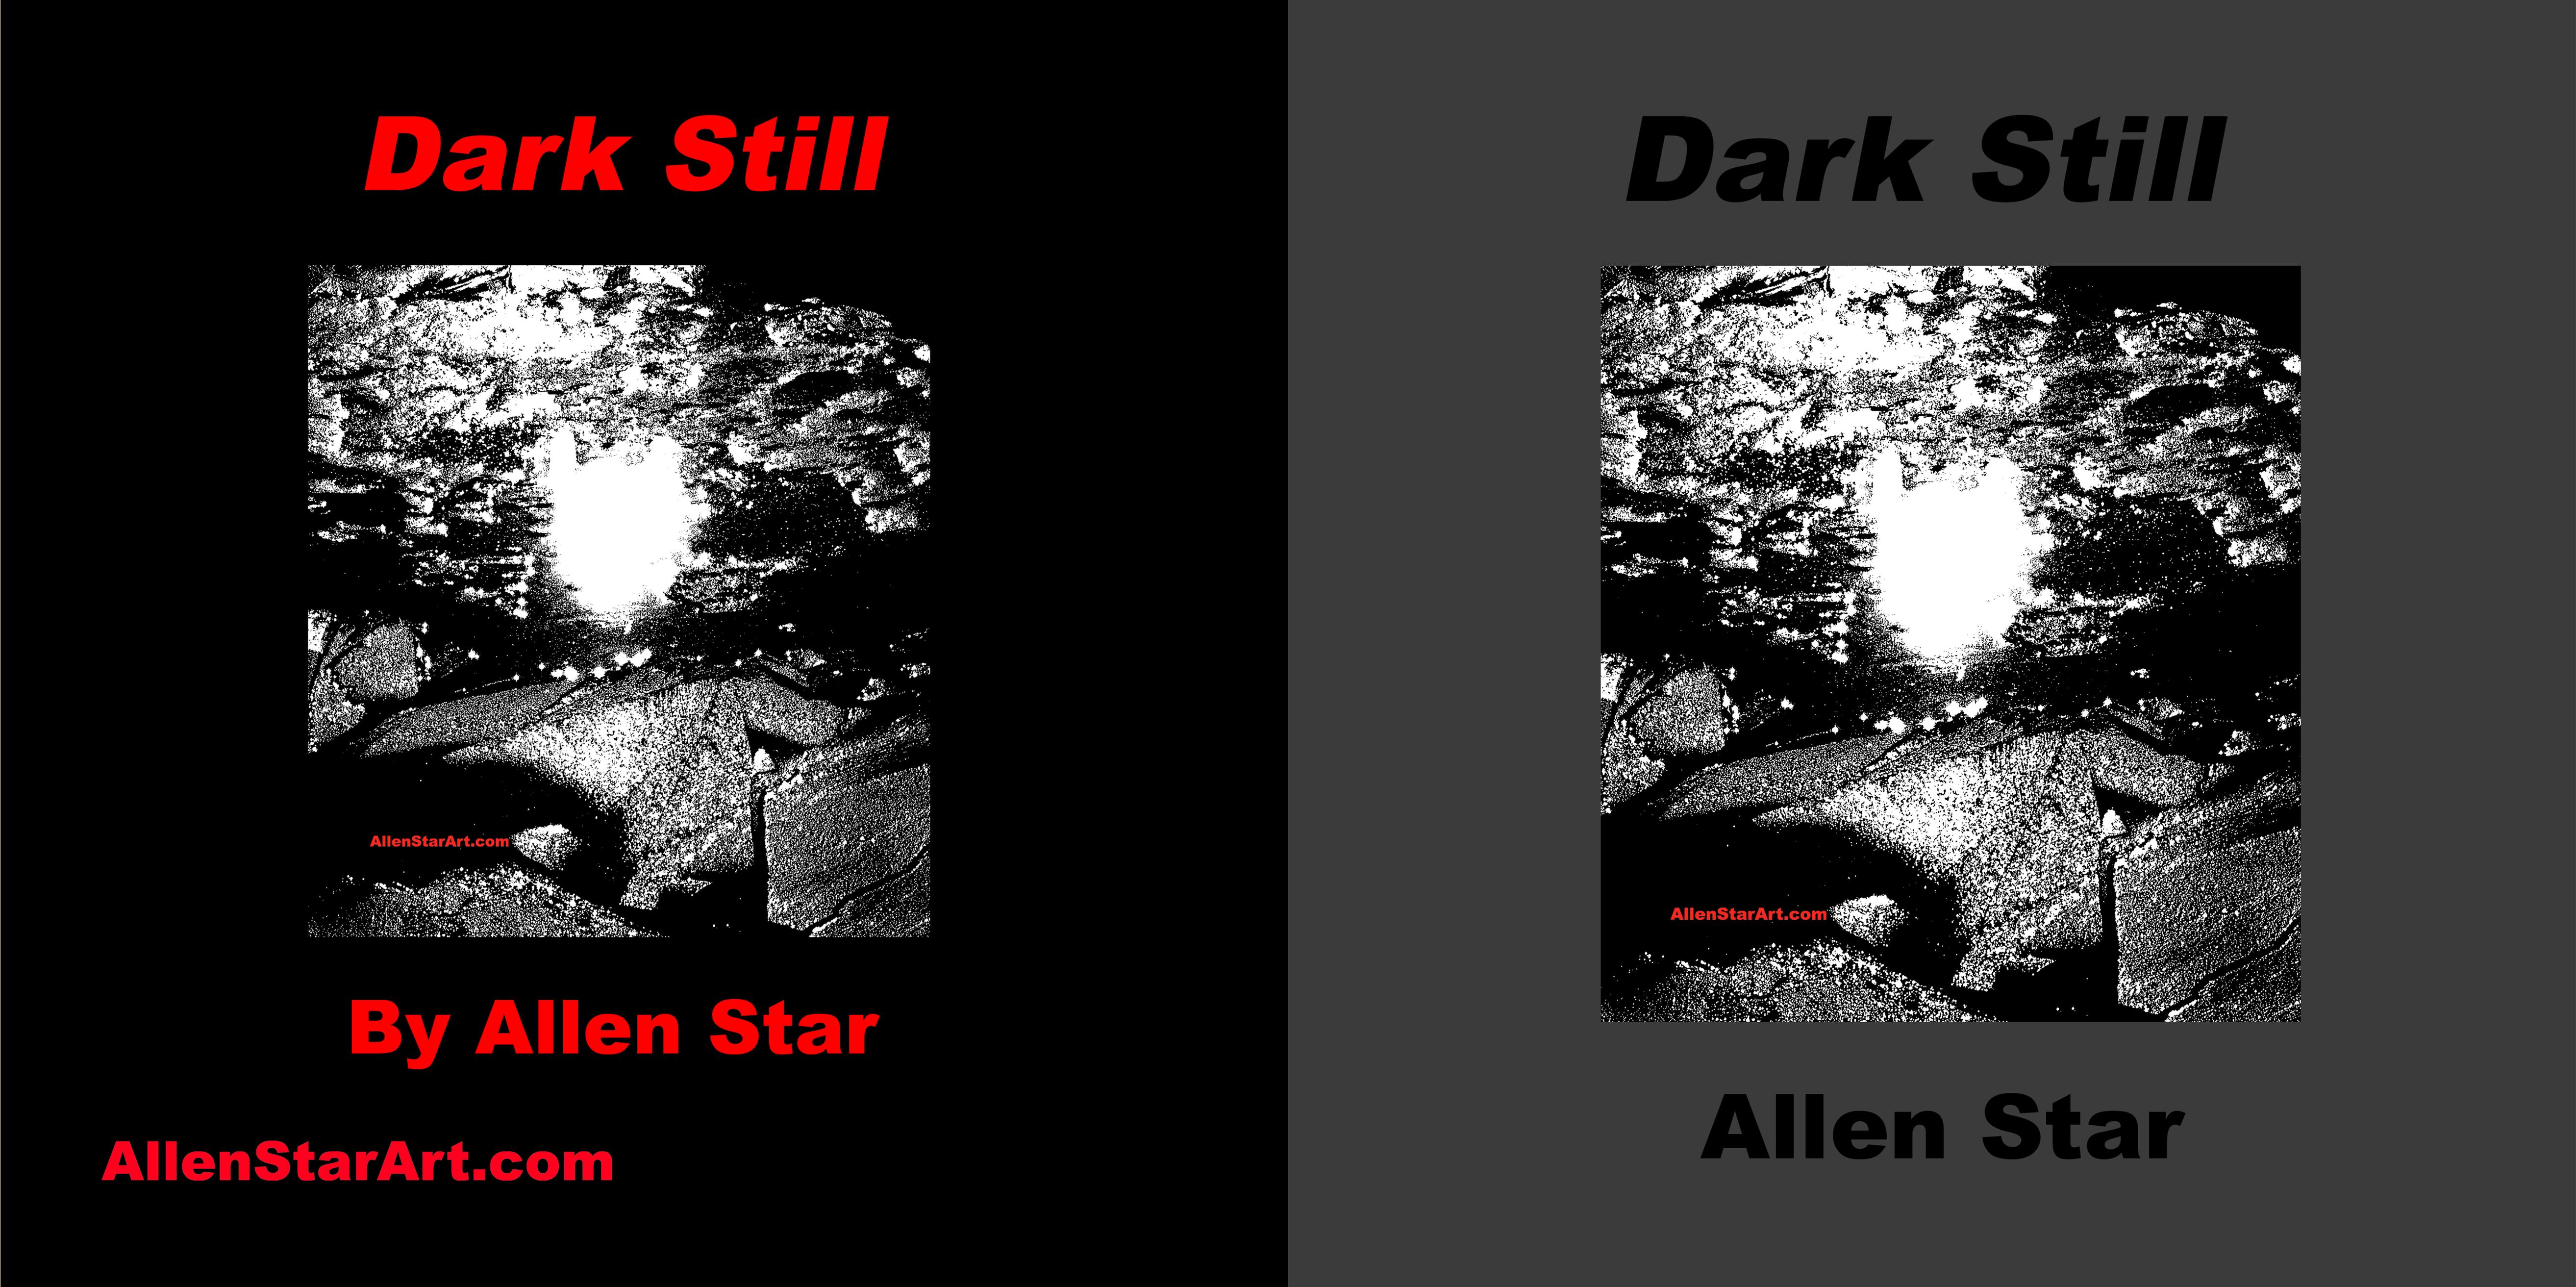 Dark Still cover image